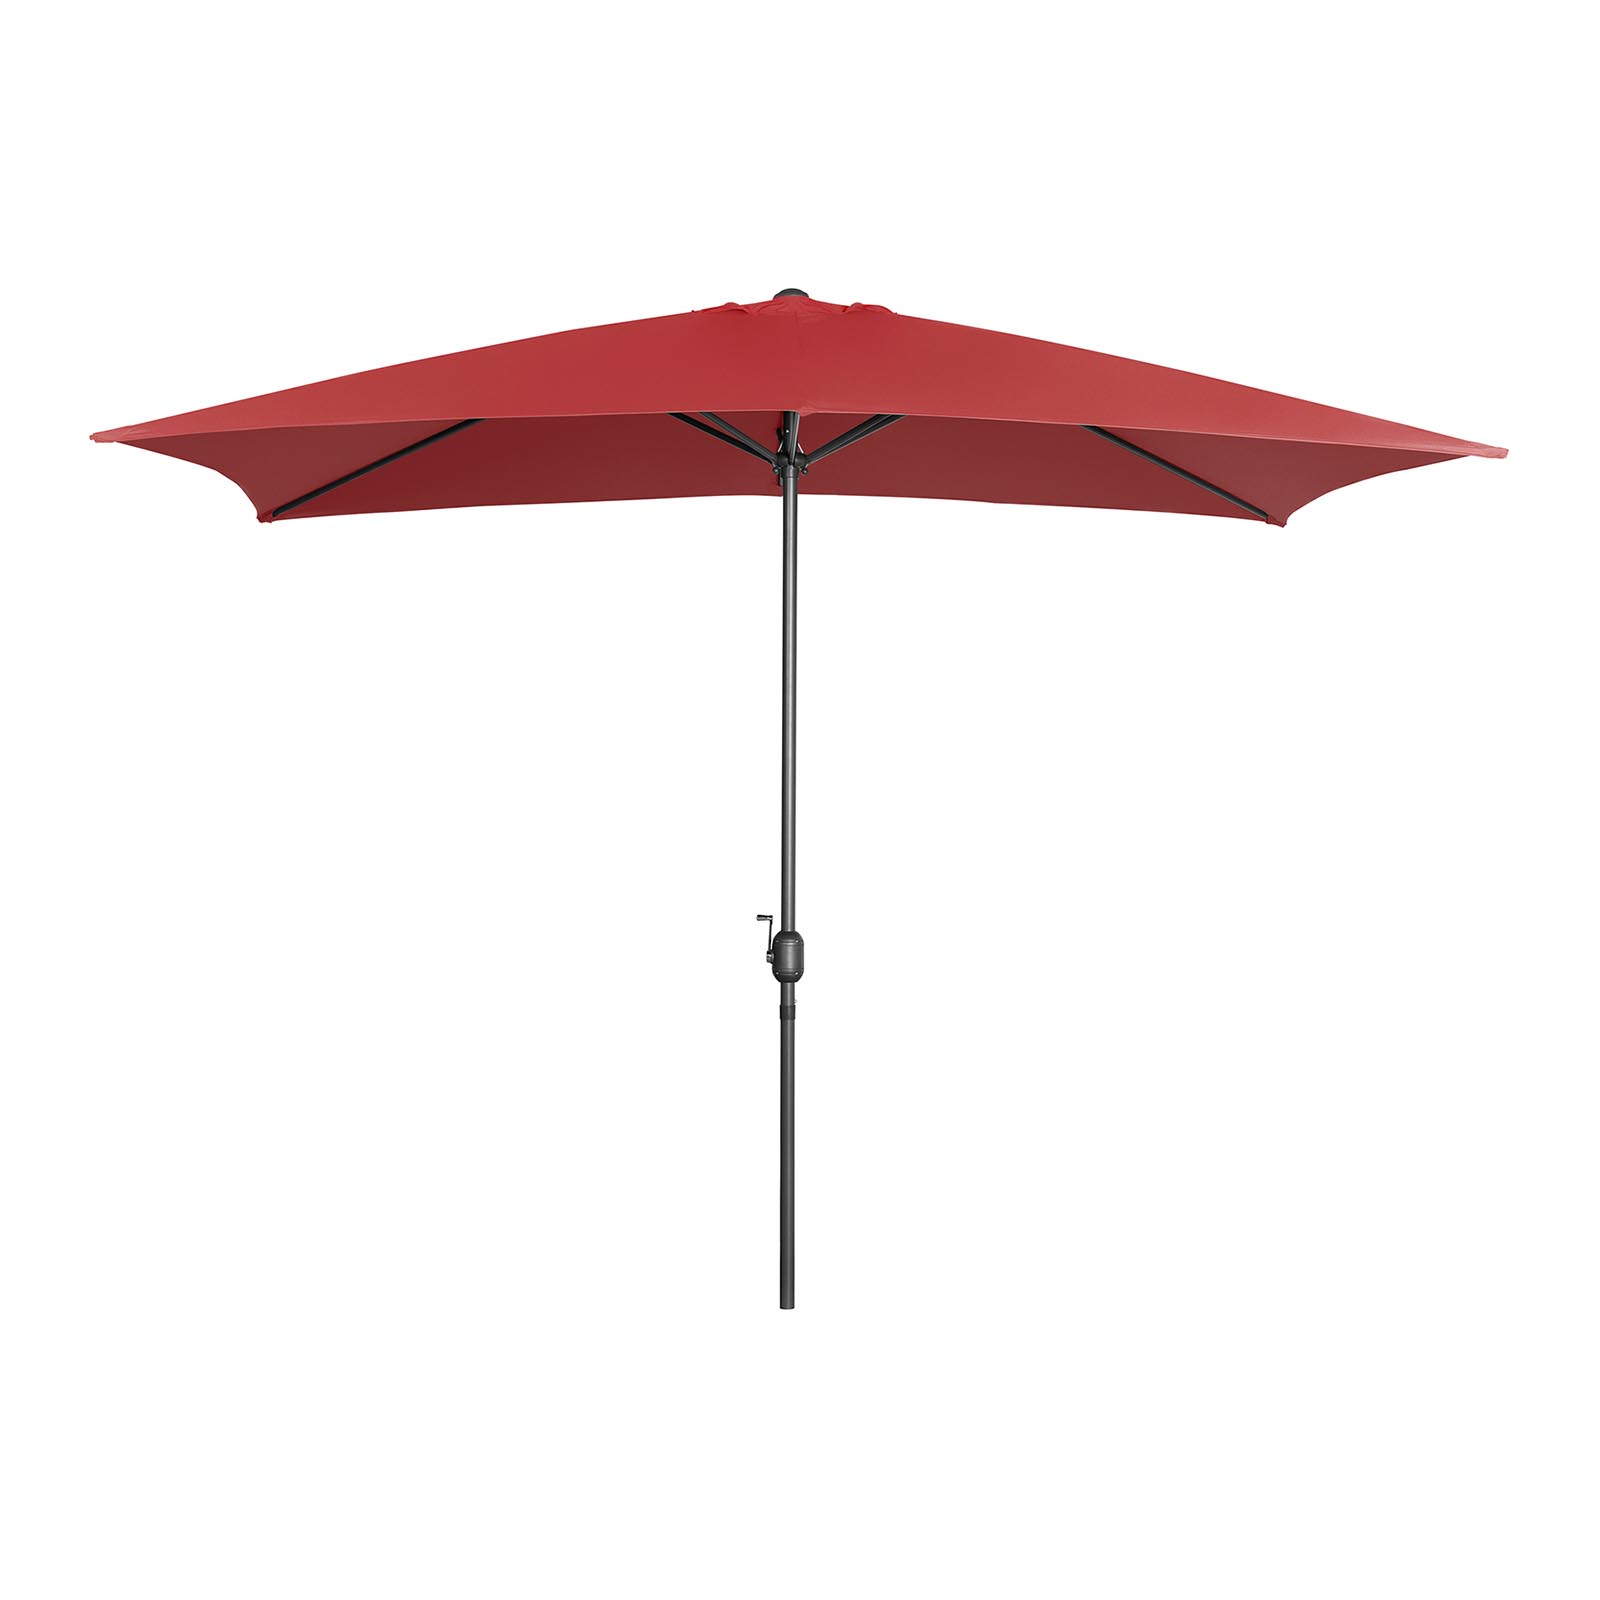 Large Outdoor Umbrella - claret - rectangular - 200 x 300 cm